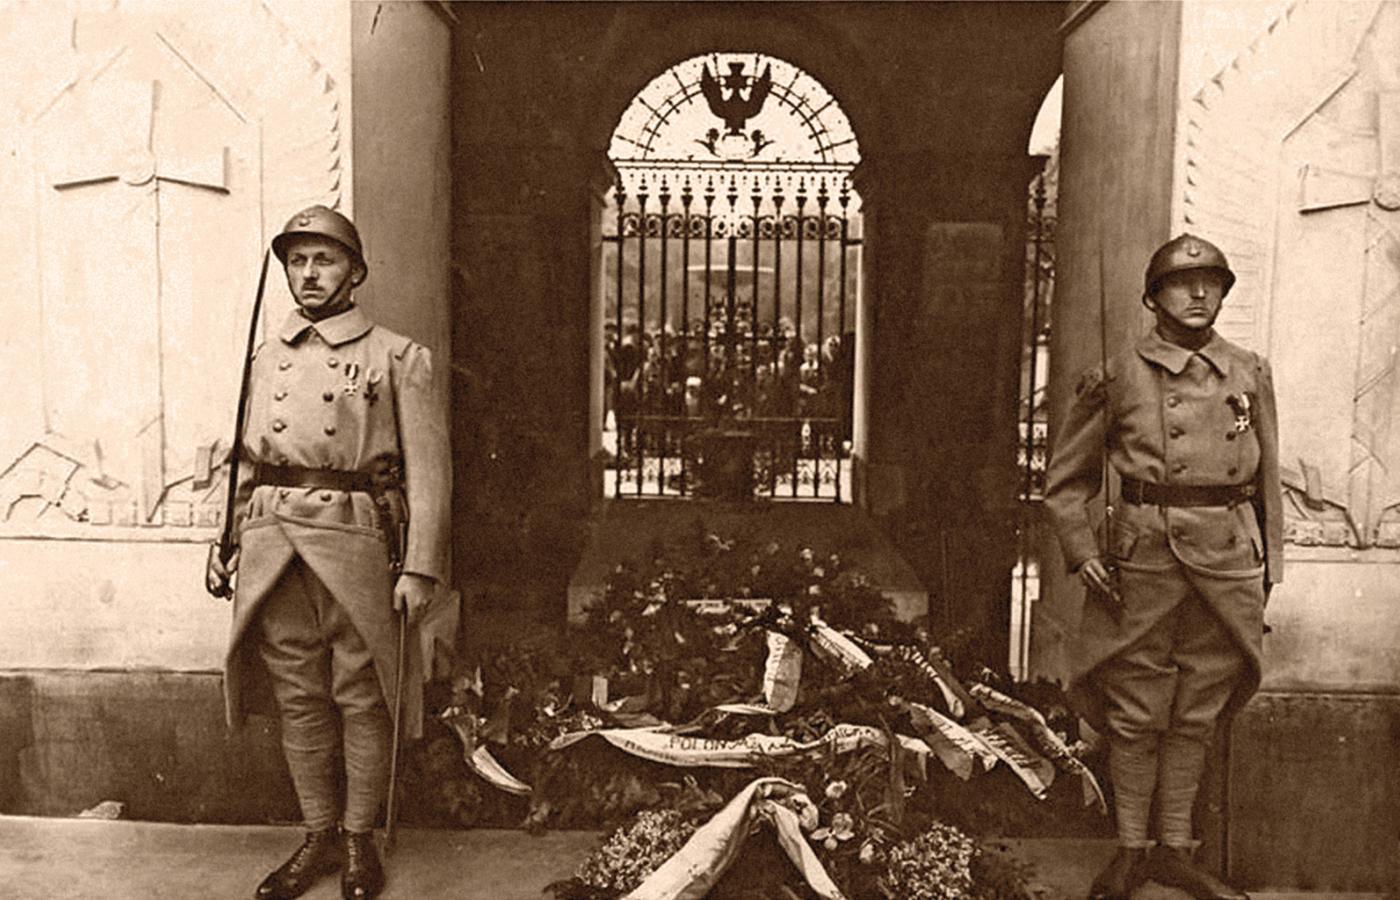 Bajończycy na warcie przed Grobem Nieznanego Żołnierza w Warszawie, maj 1926 r.